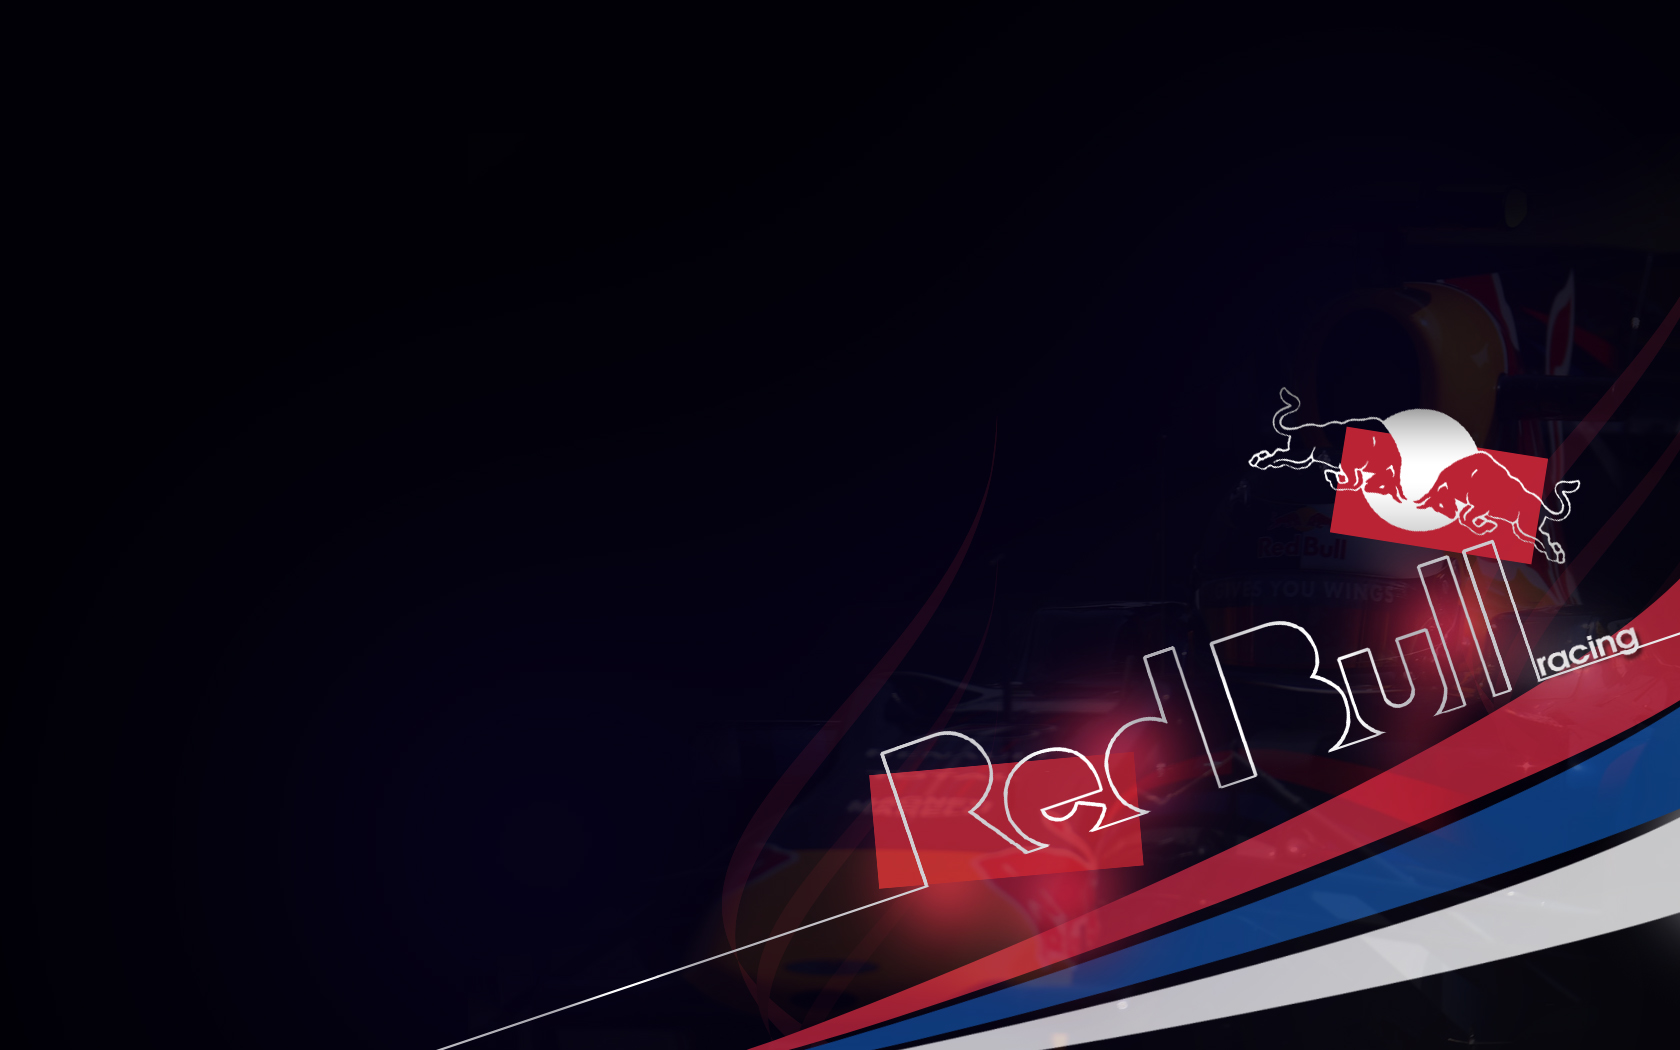 Hình nền Red Bull đẹp: Thay đổi không gian màn hình của bạn với những hình nền đẹp lung linh của Red Bull. Từ những đường cong quyến rũ đến những cảnh quan đậm chất mạo hiểm, bạn sẽ không thể rời mắt khỏi những hình nền này.